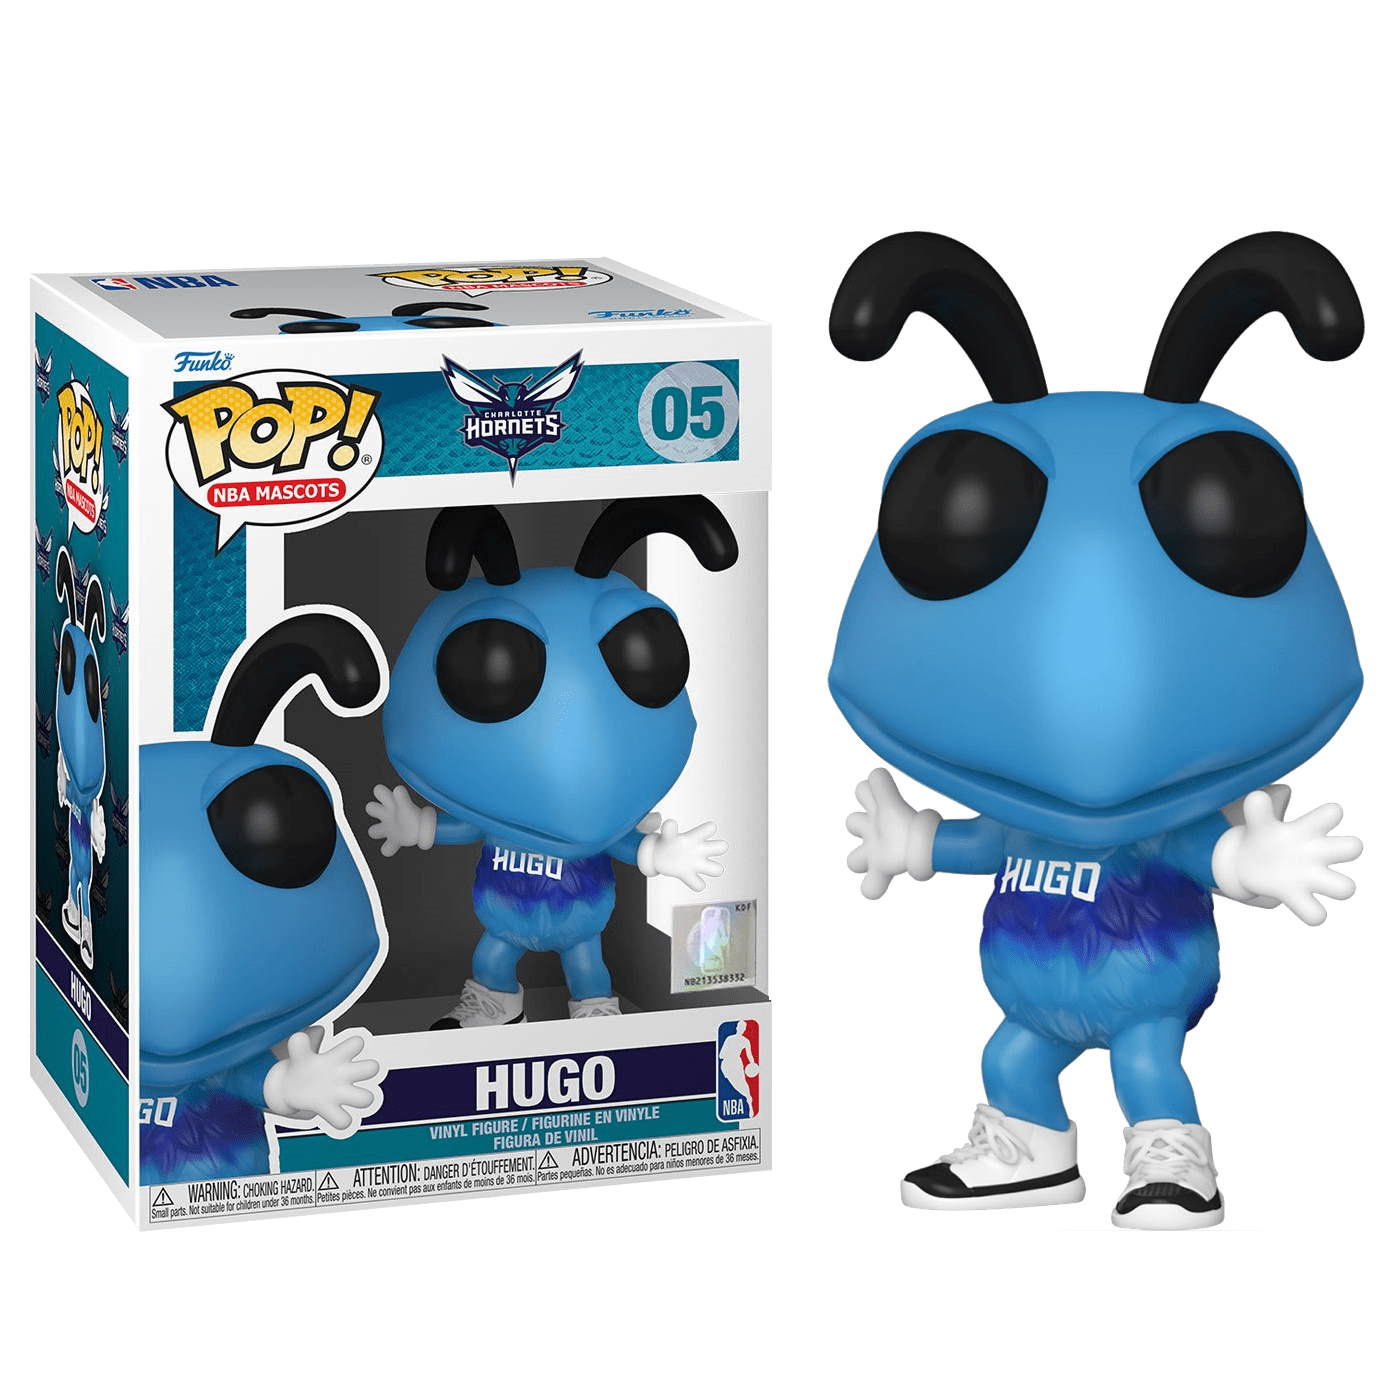 Hugo 5